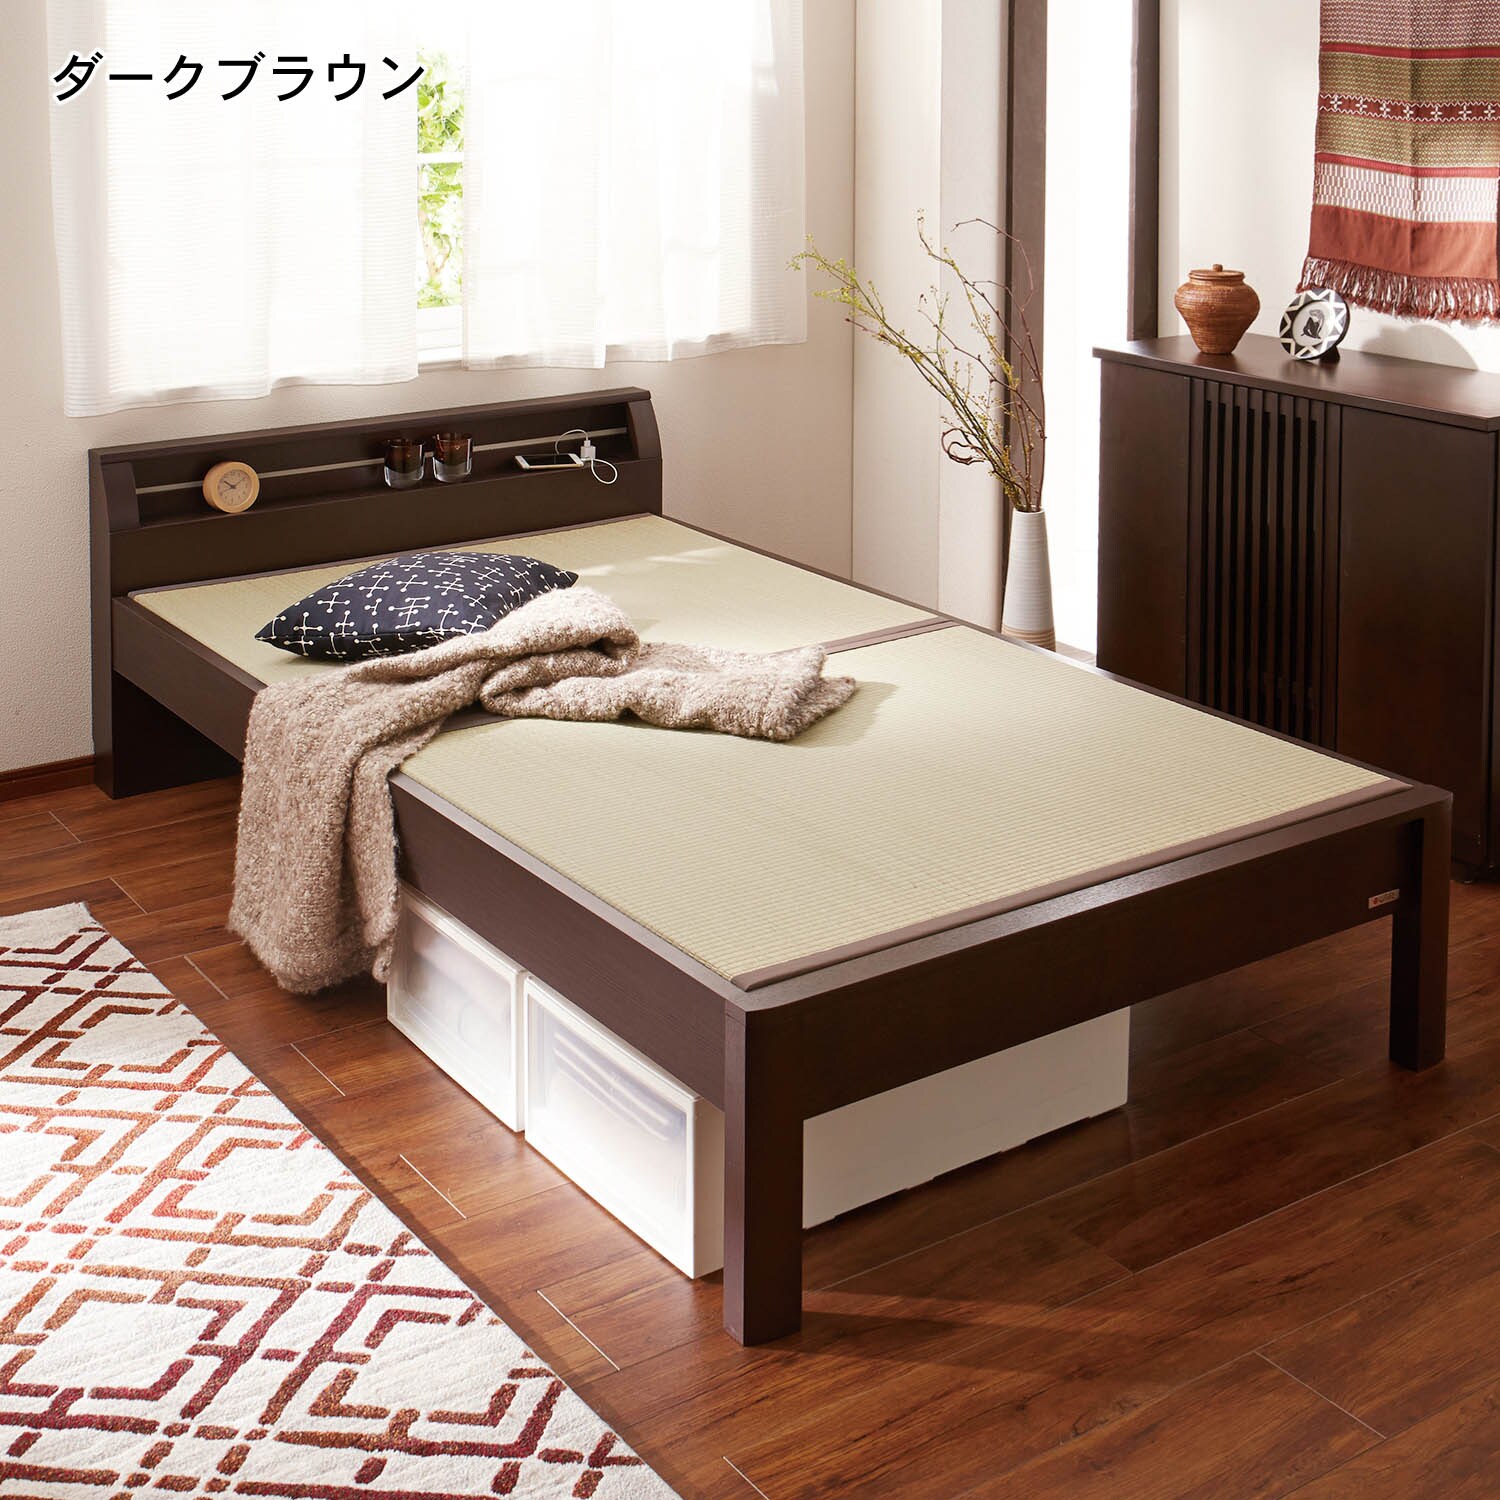 【ベルメゾン】コンセント付き畳ベッド